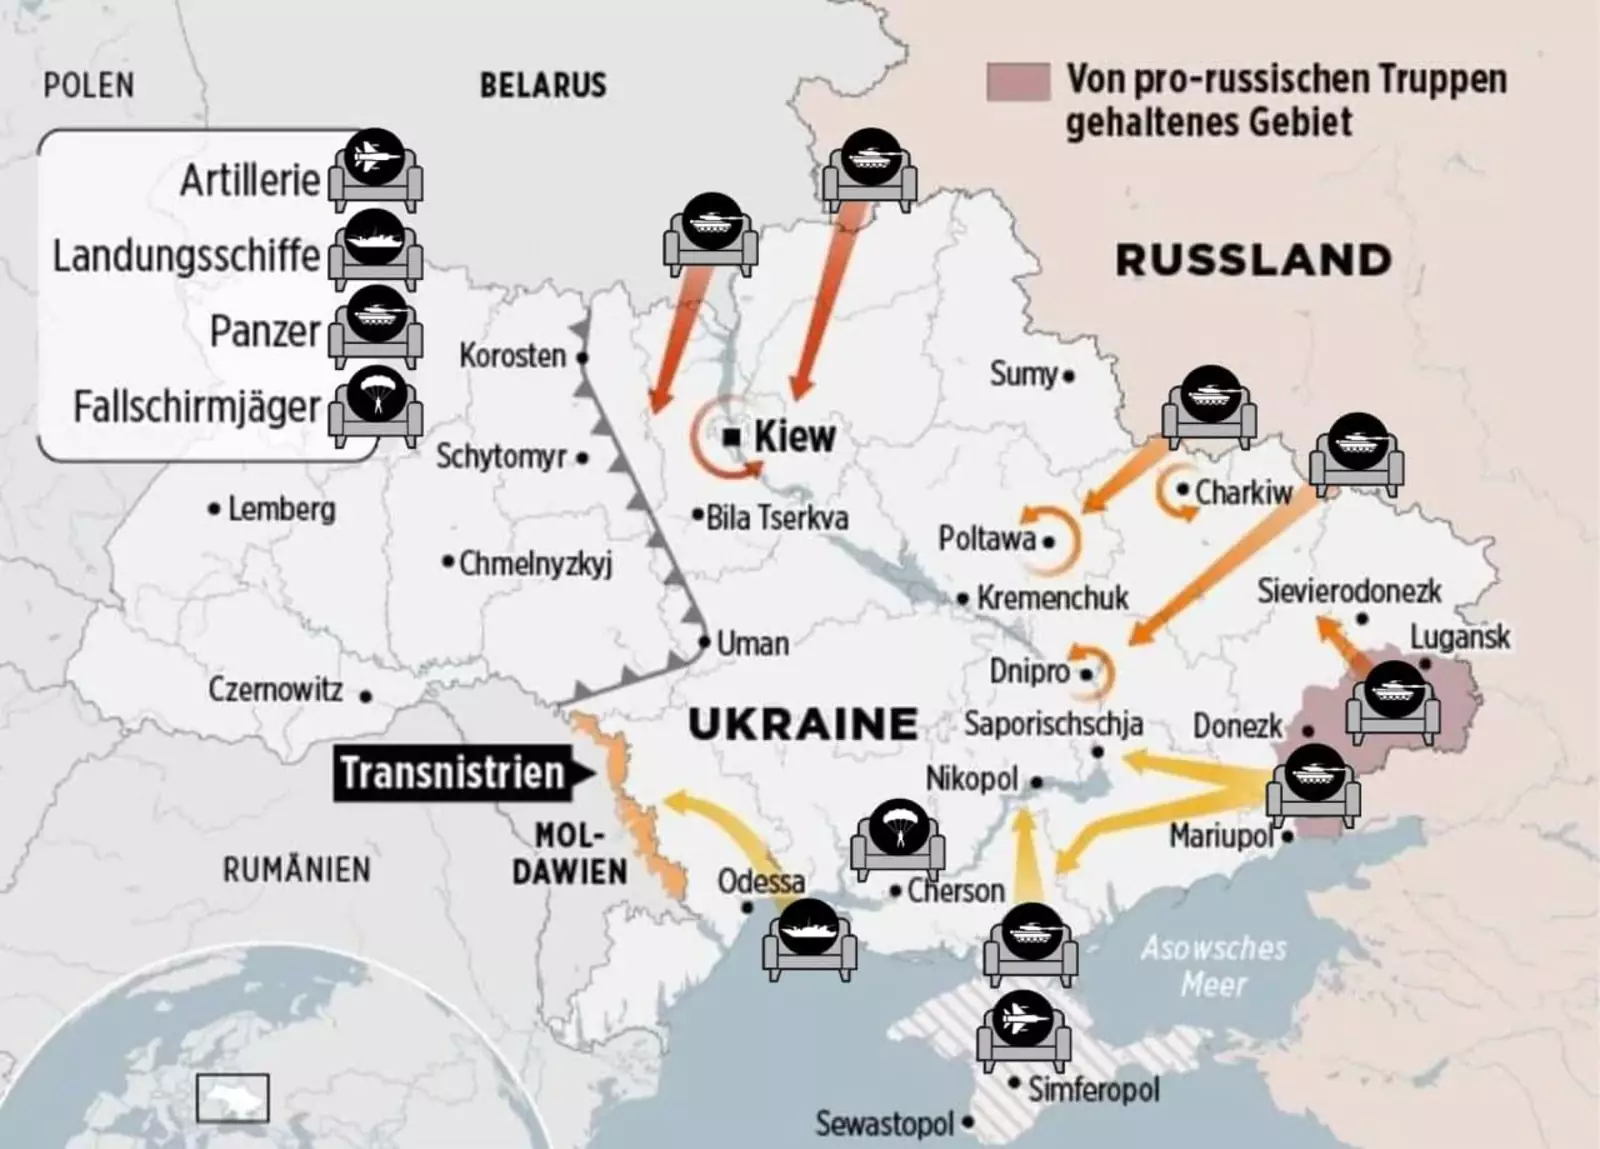 План вторжения на Украину по версии Bild, декабрь 2021 года